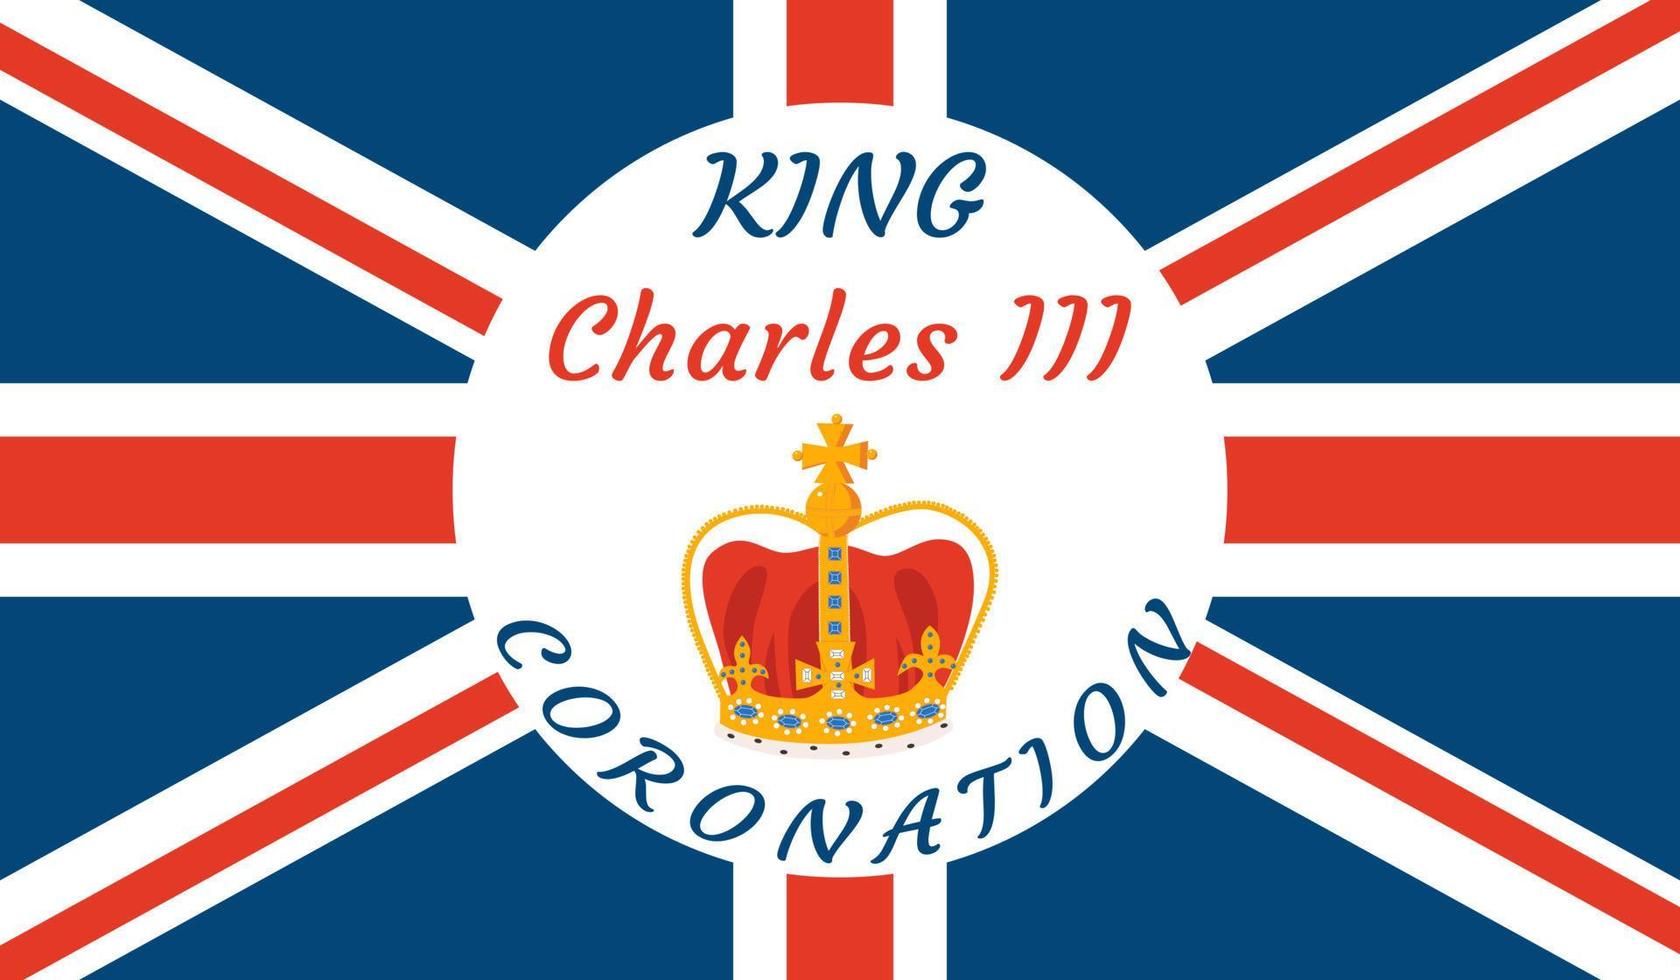 re charles iii. bandiera per celebrare incoronazione e regno per il Britannico trono. vettore